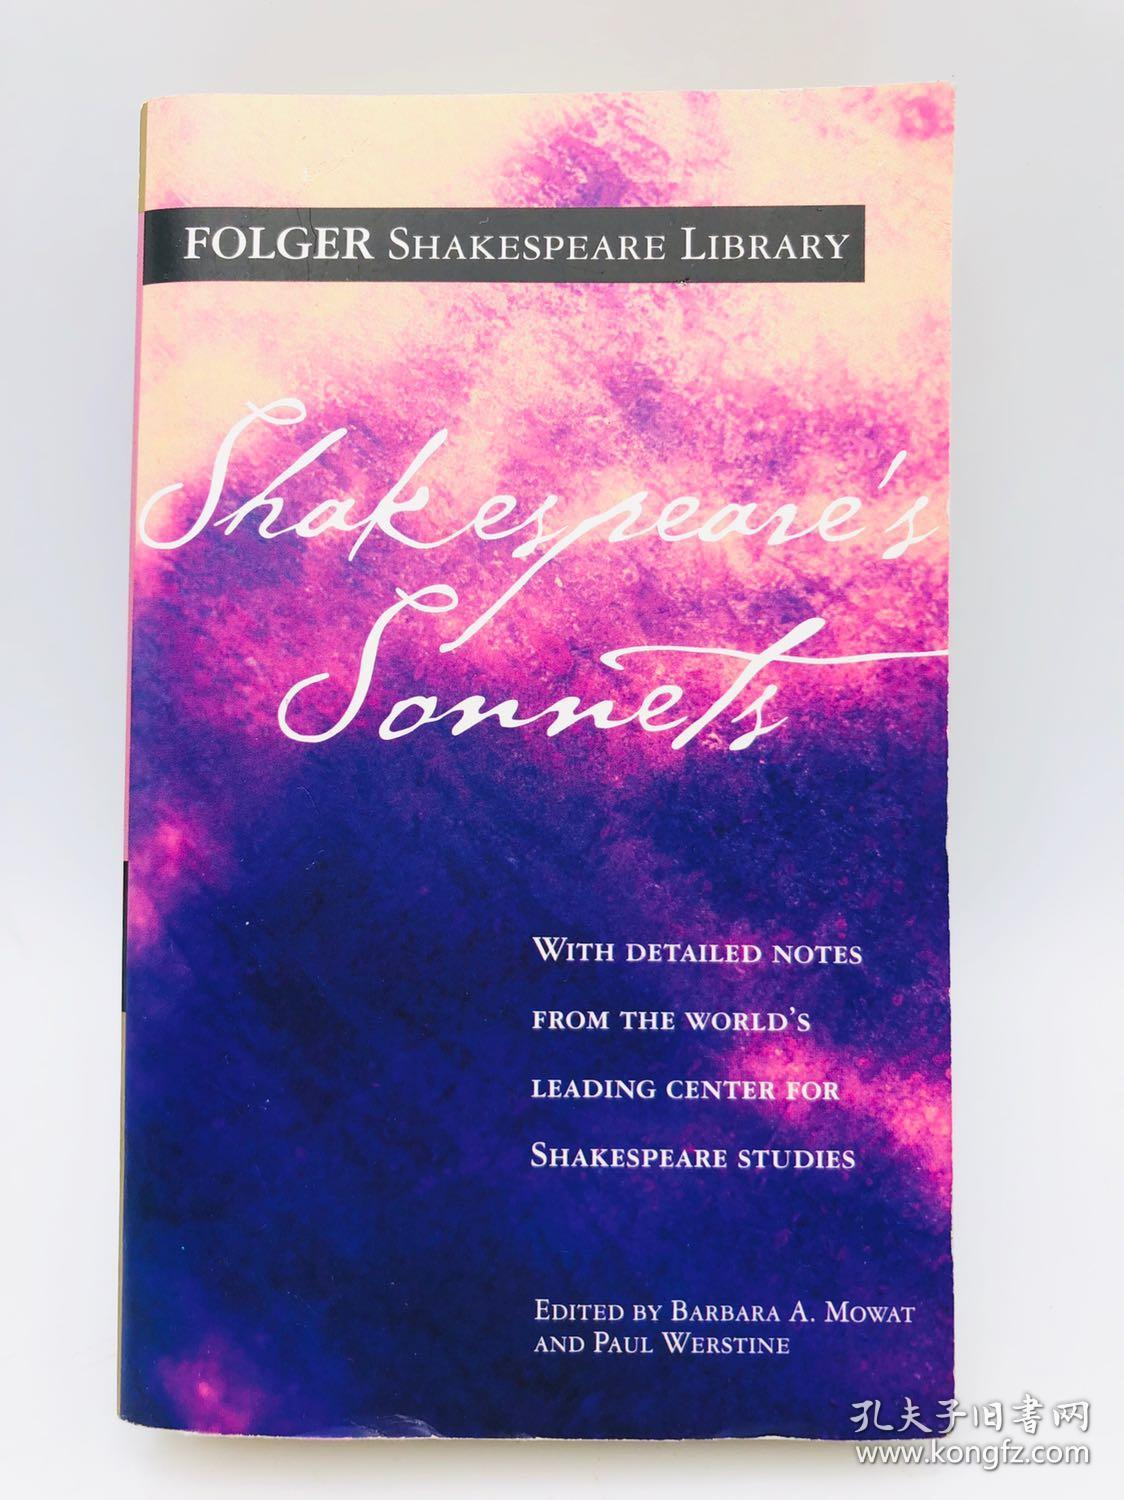 Shakespeare's Sonnets (Folger Shakespeare Library) 英文原版《莎士比亚的十四行诗》（福尔杰莎士比亚图书馆）